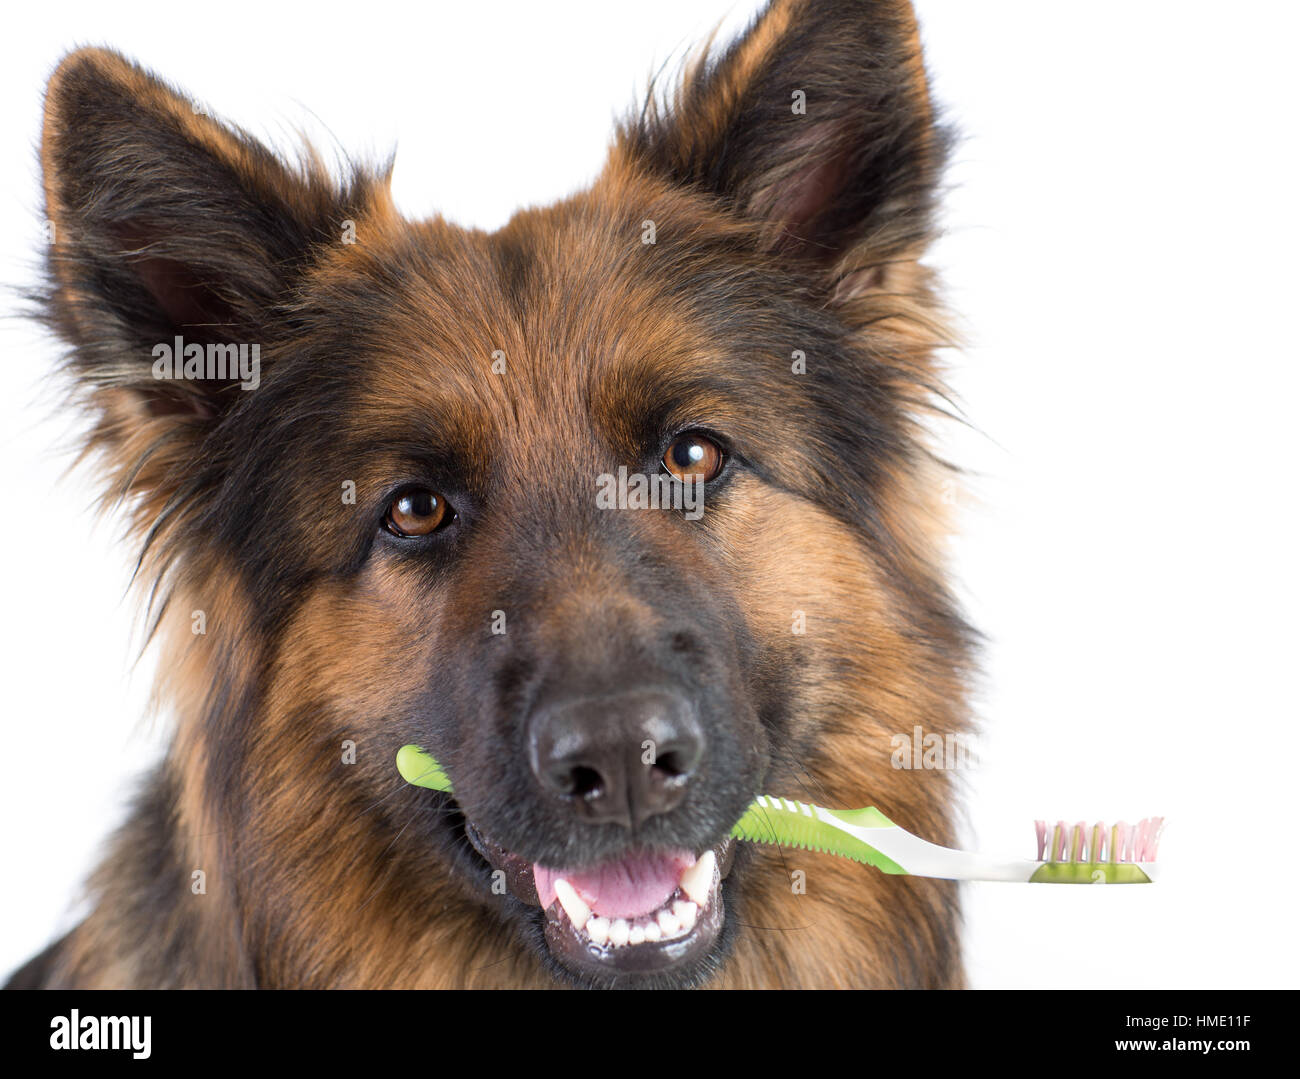 Perro sujetando el cepillo de dientes como concepto de higiene dental Foto de stock